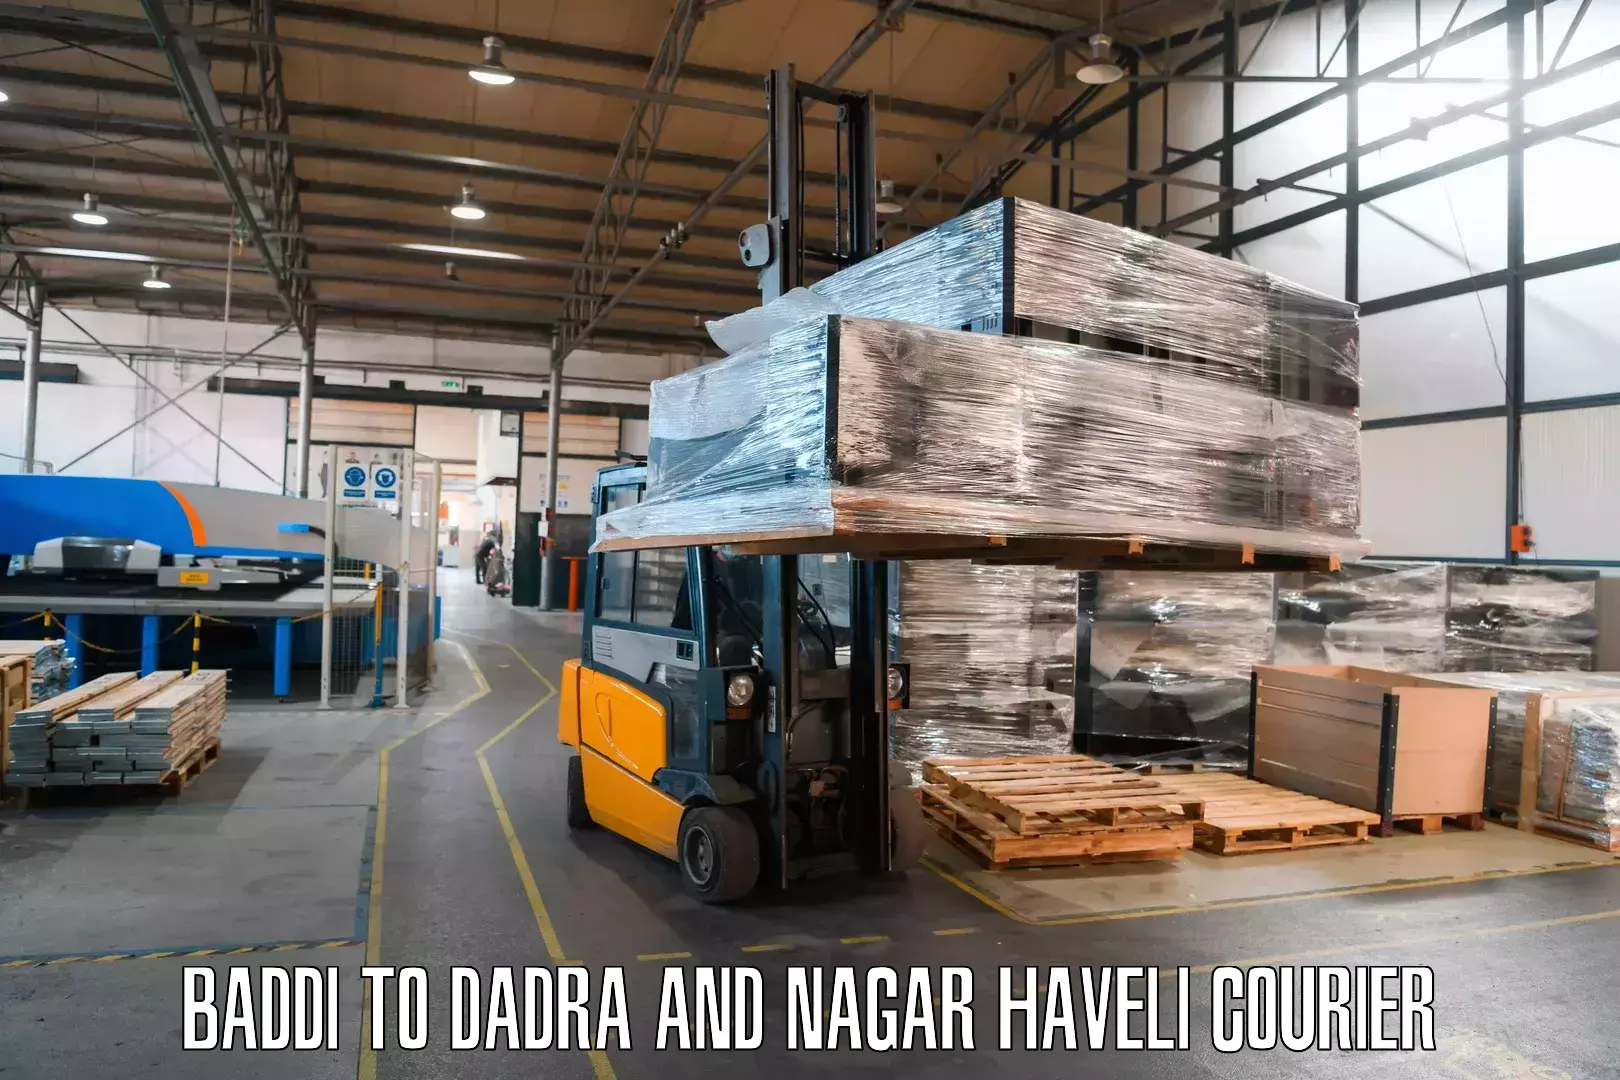 24/7 shipping services Baddi to Dadra and Nagar Haveli